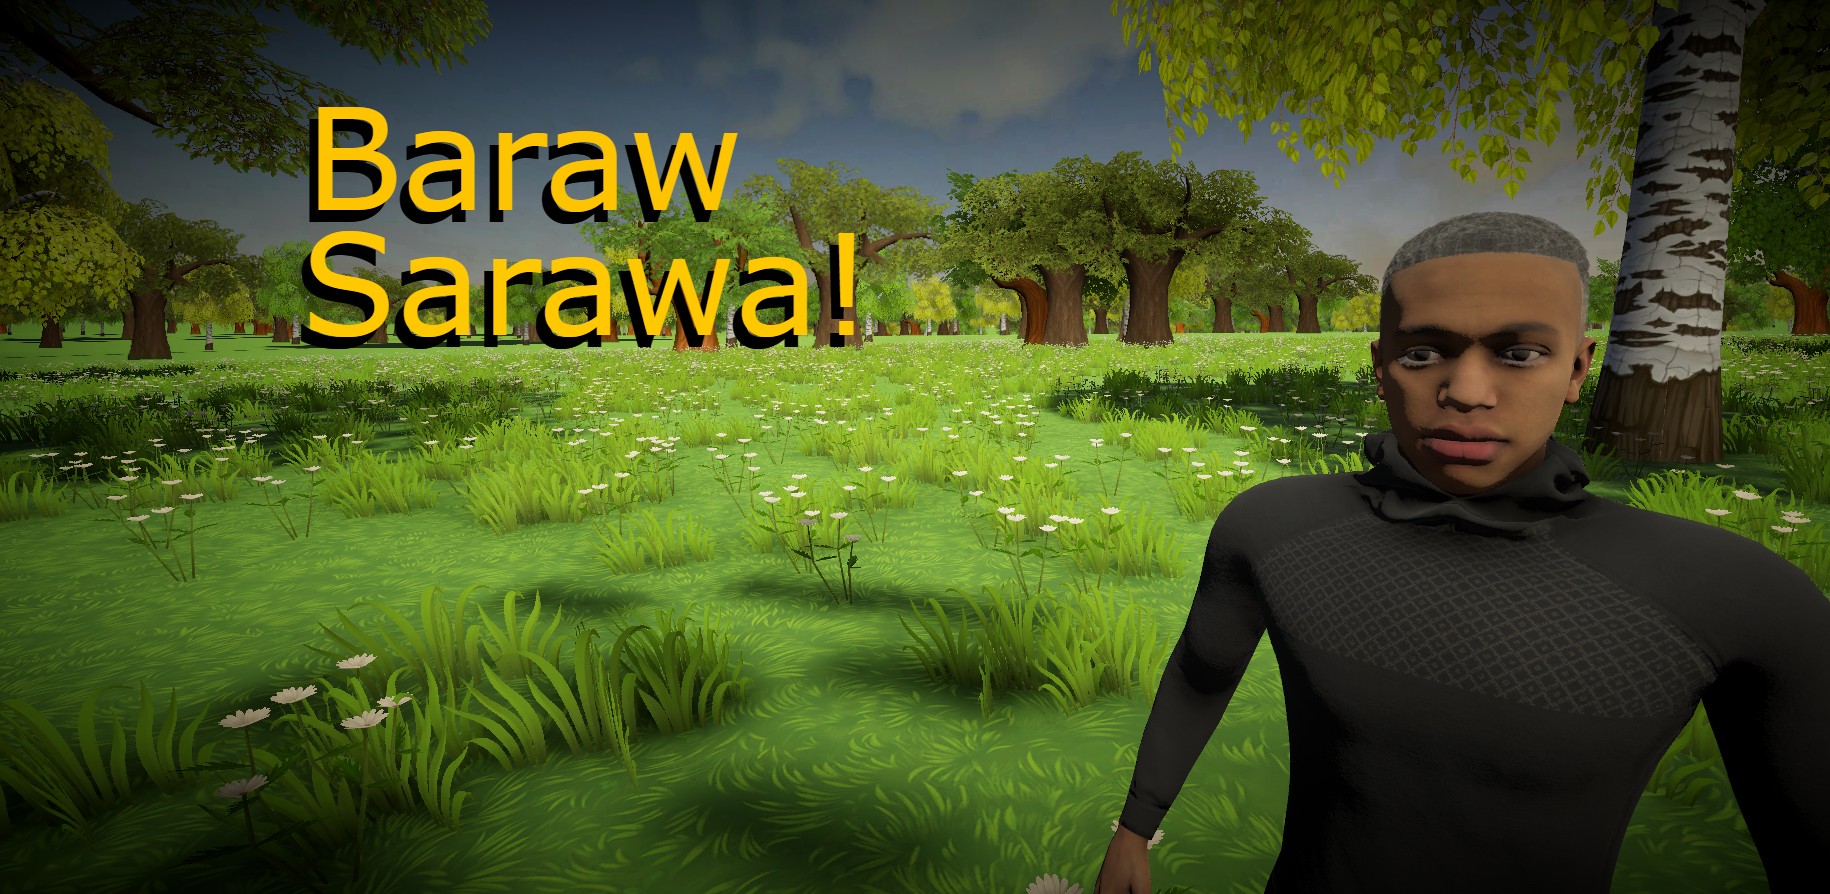 Baraw Sarawa!